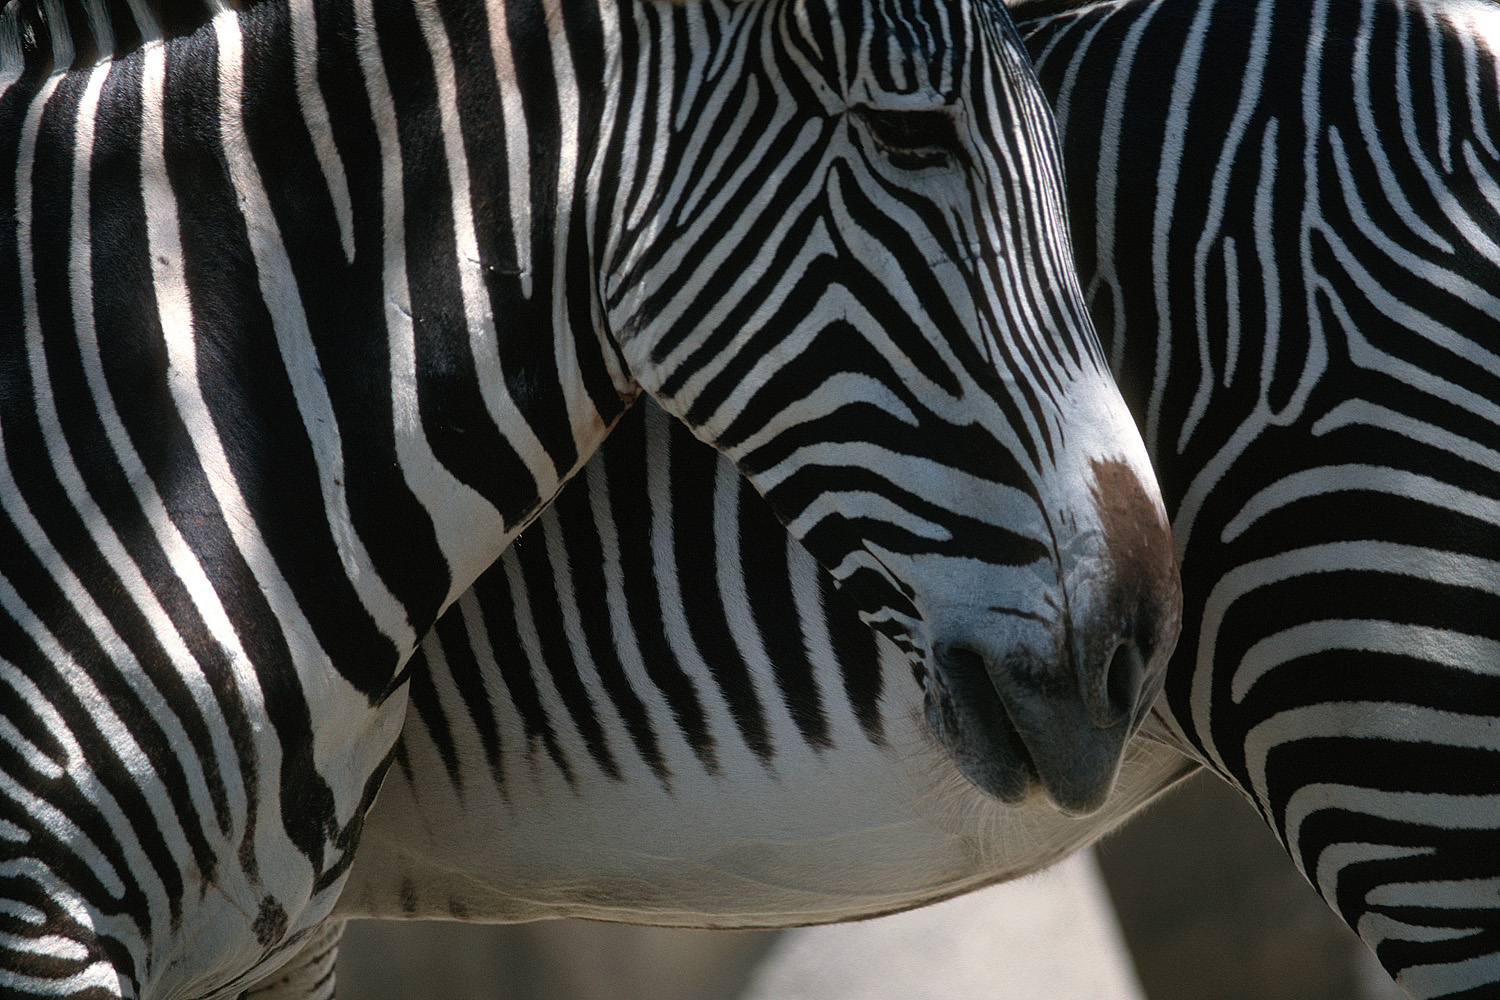 bill-hocker-zebras-san-diego-zoo-san-diego-california-1979